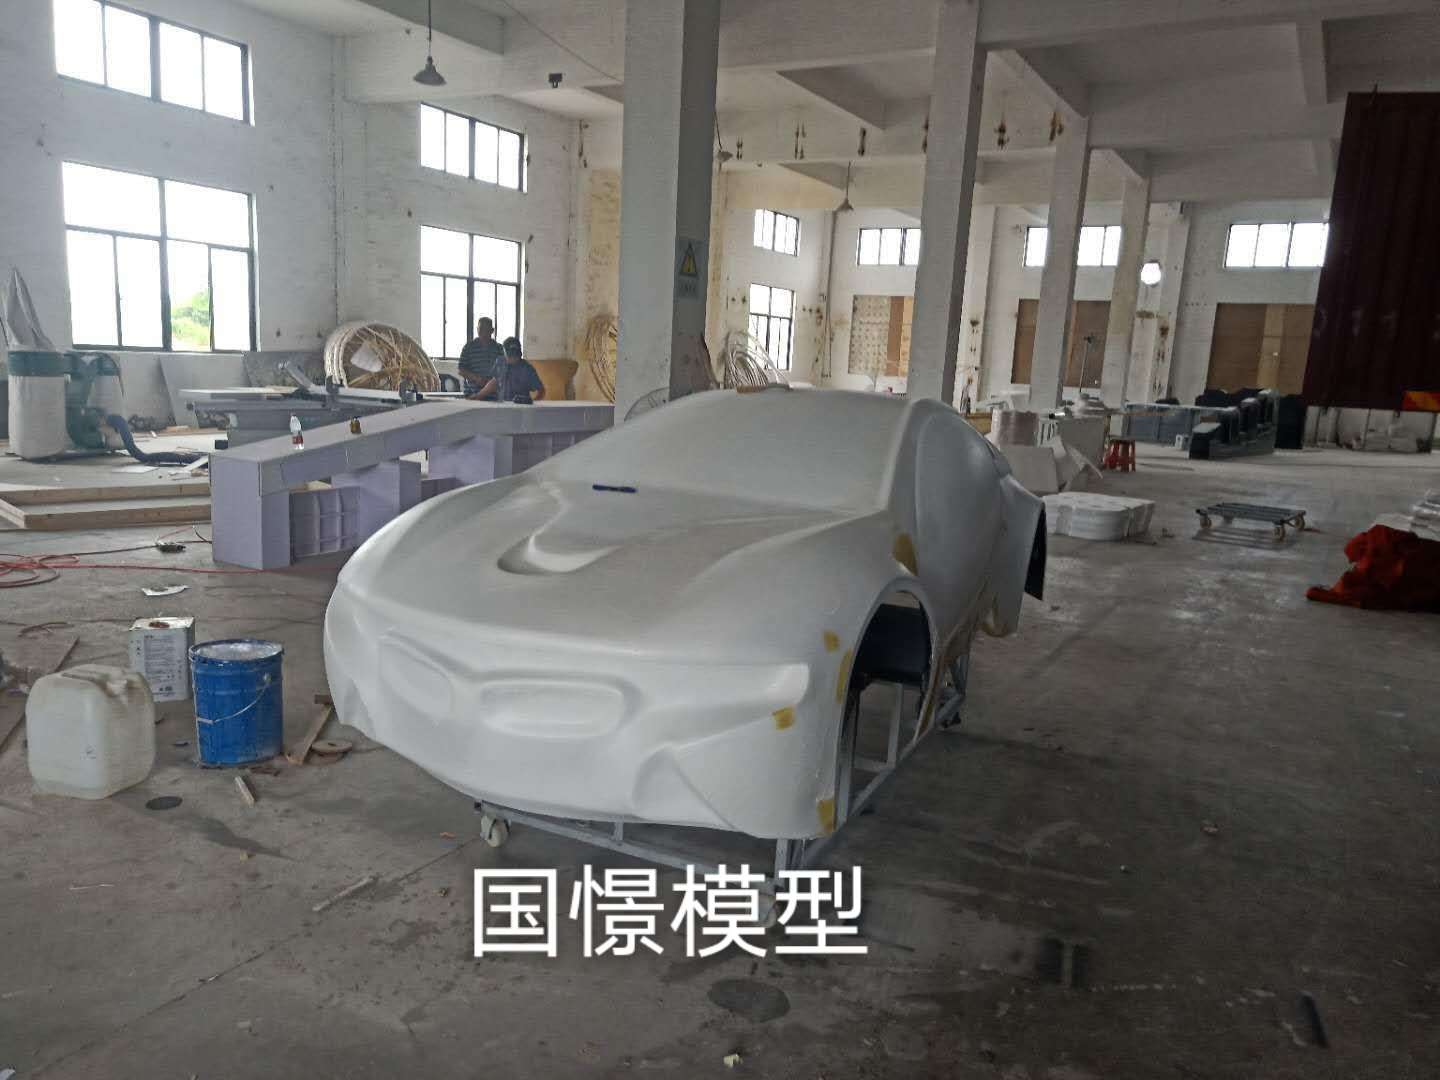 龙陵县车辆模型